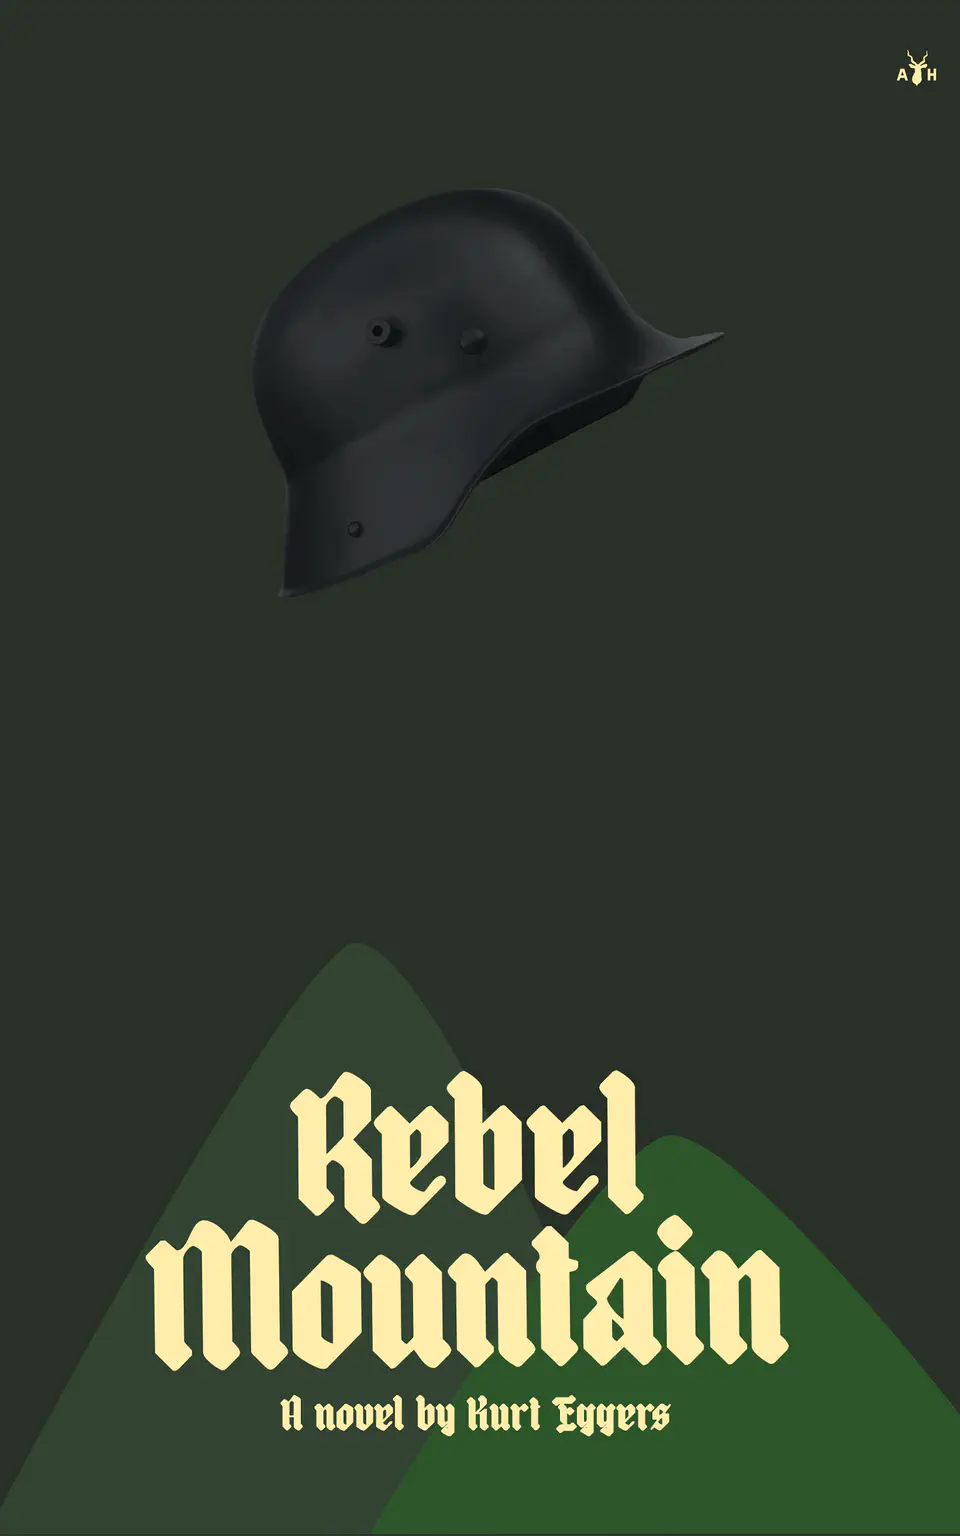 Rebel Mountain